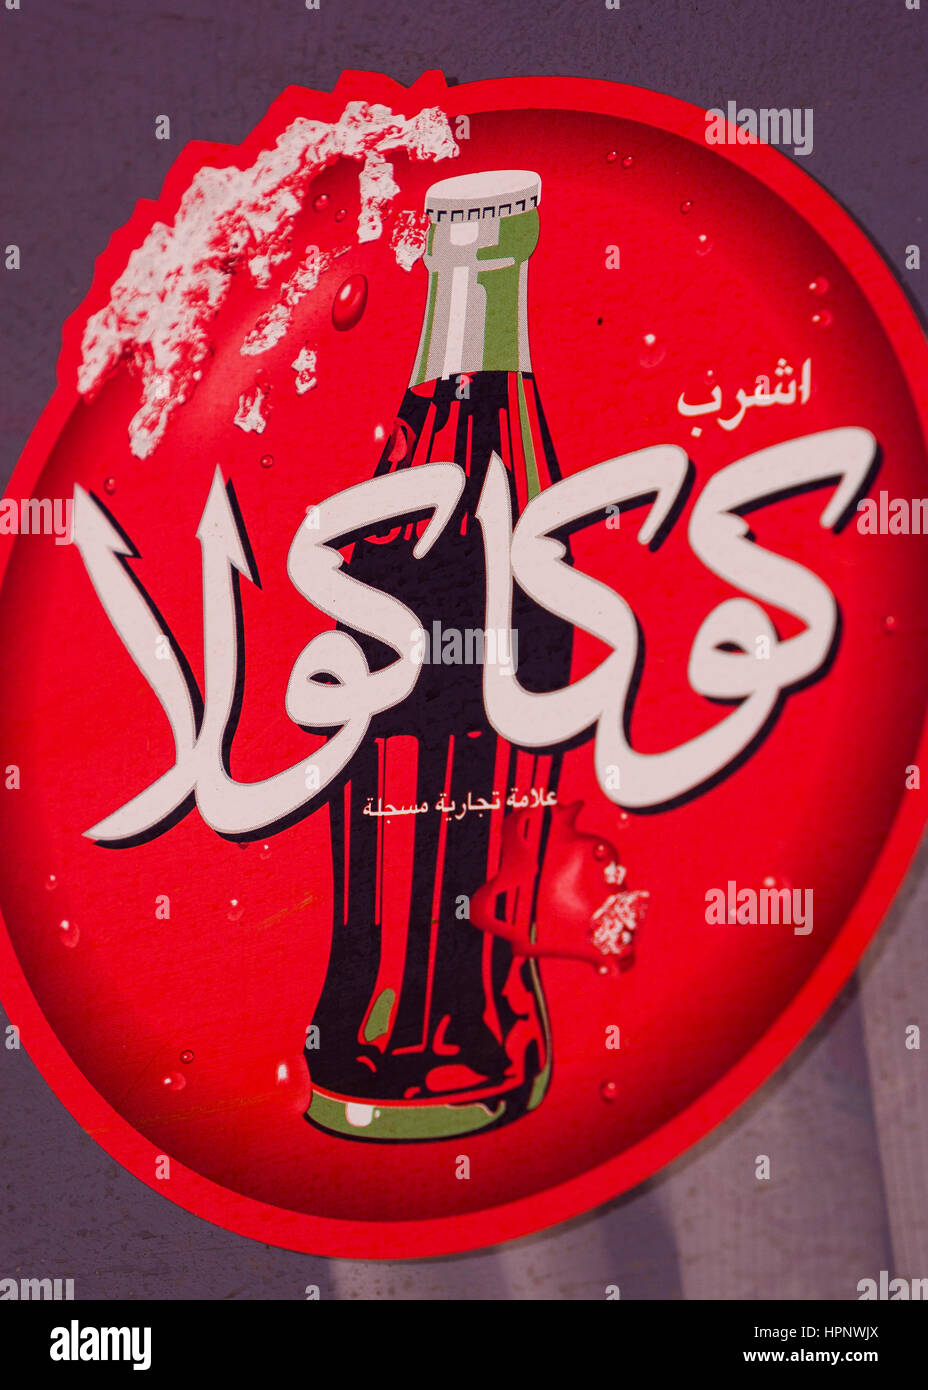 AL AIN, ÉMIRATS ARABES UNIS - Rouge Coca-cola inscription en arabe, montrant une bouteille de coke. Banque D'Images